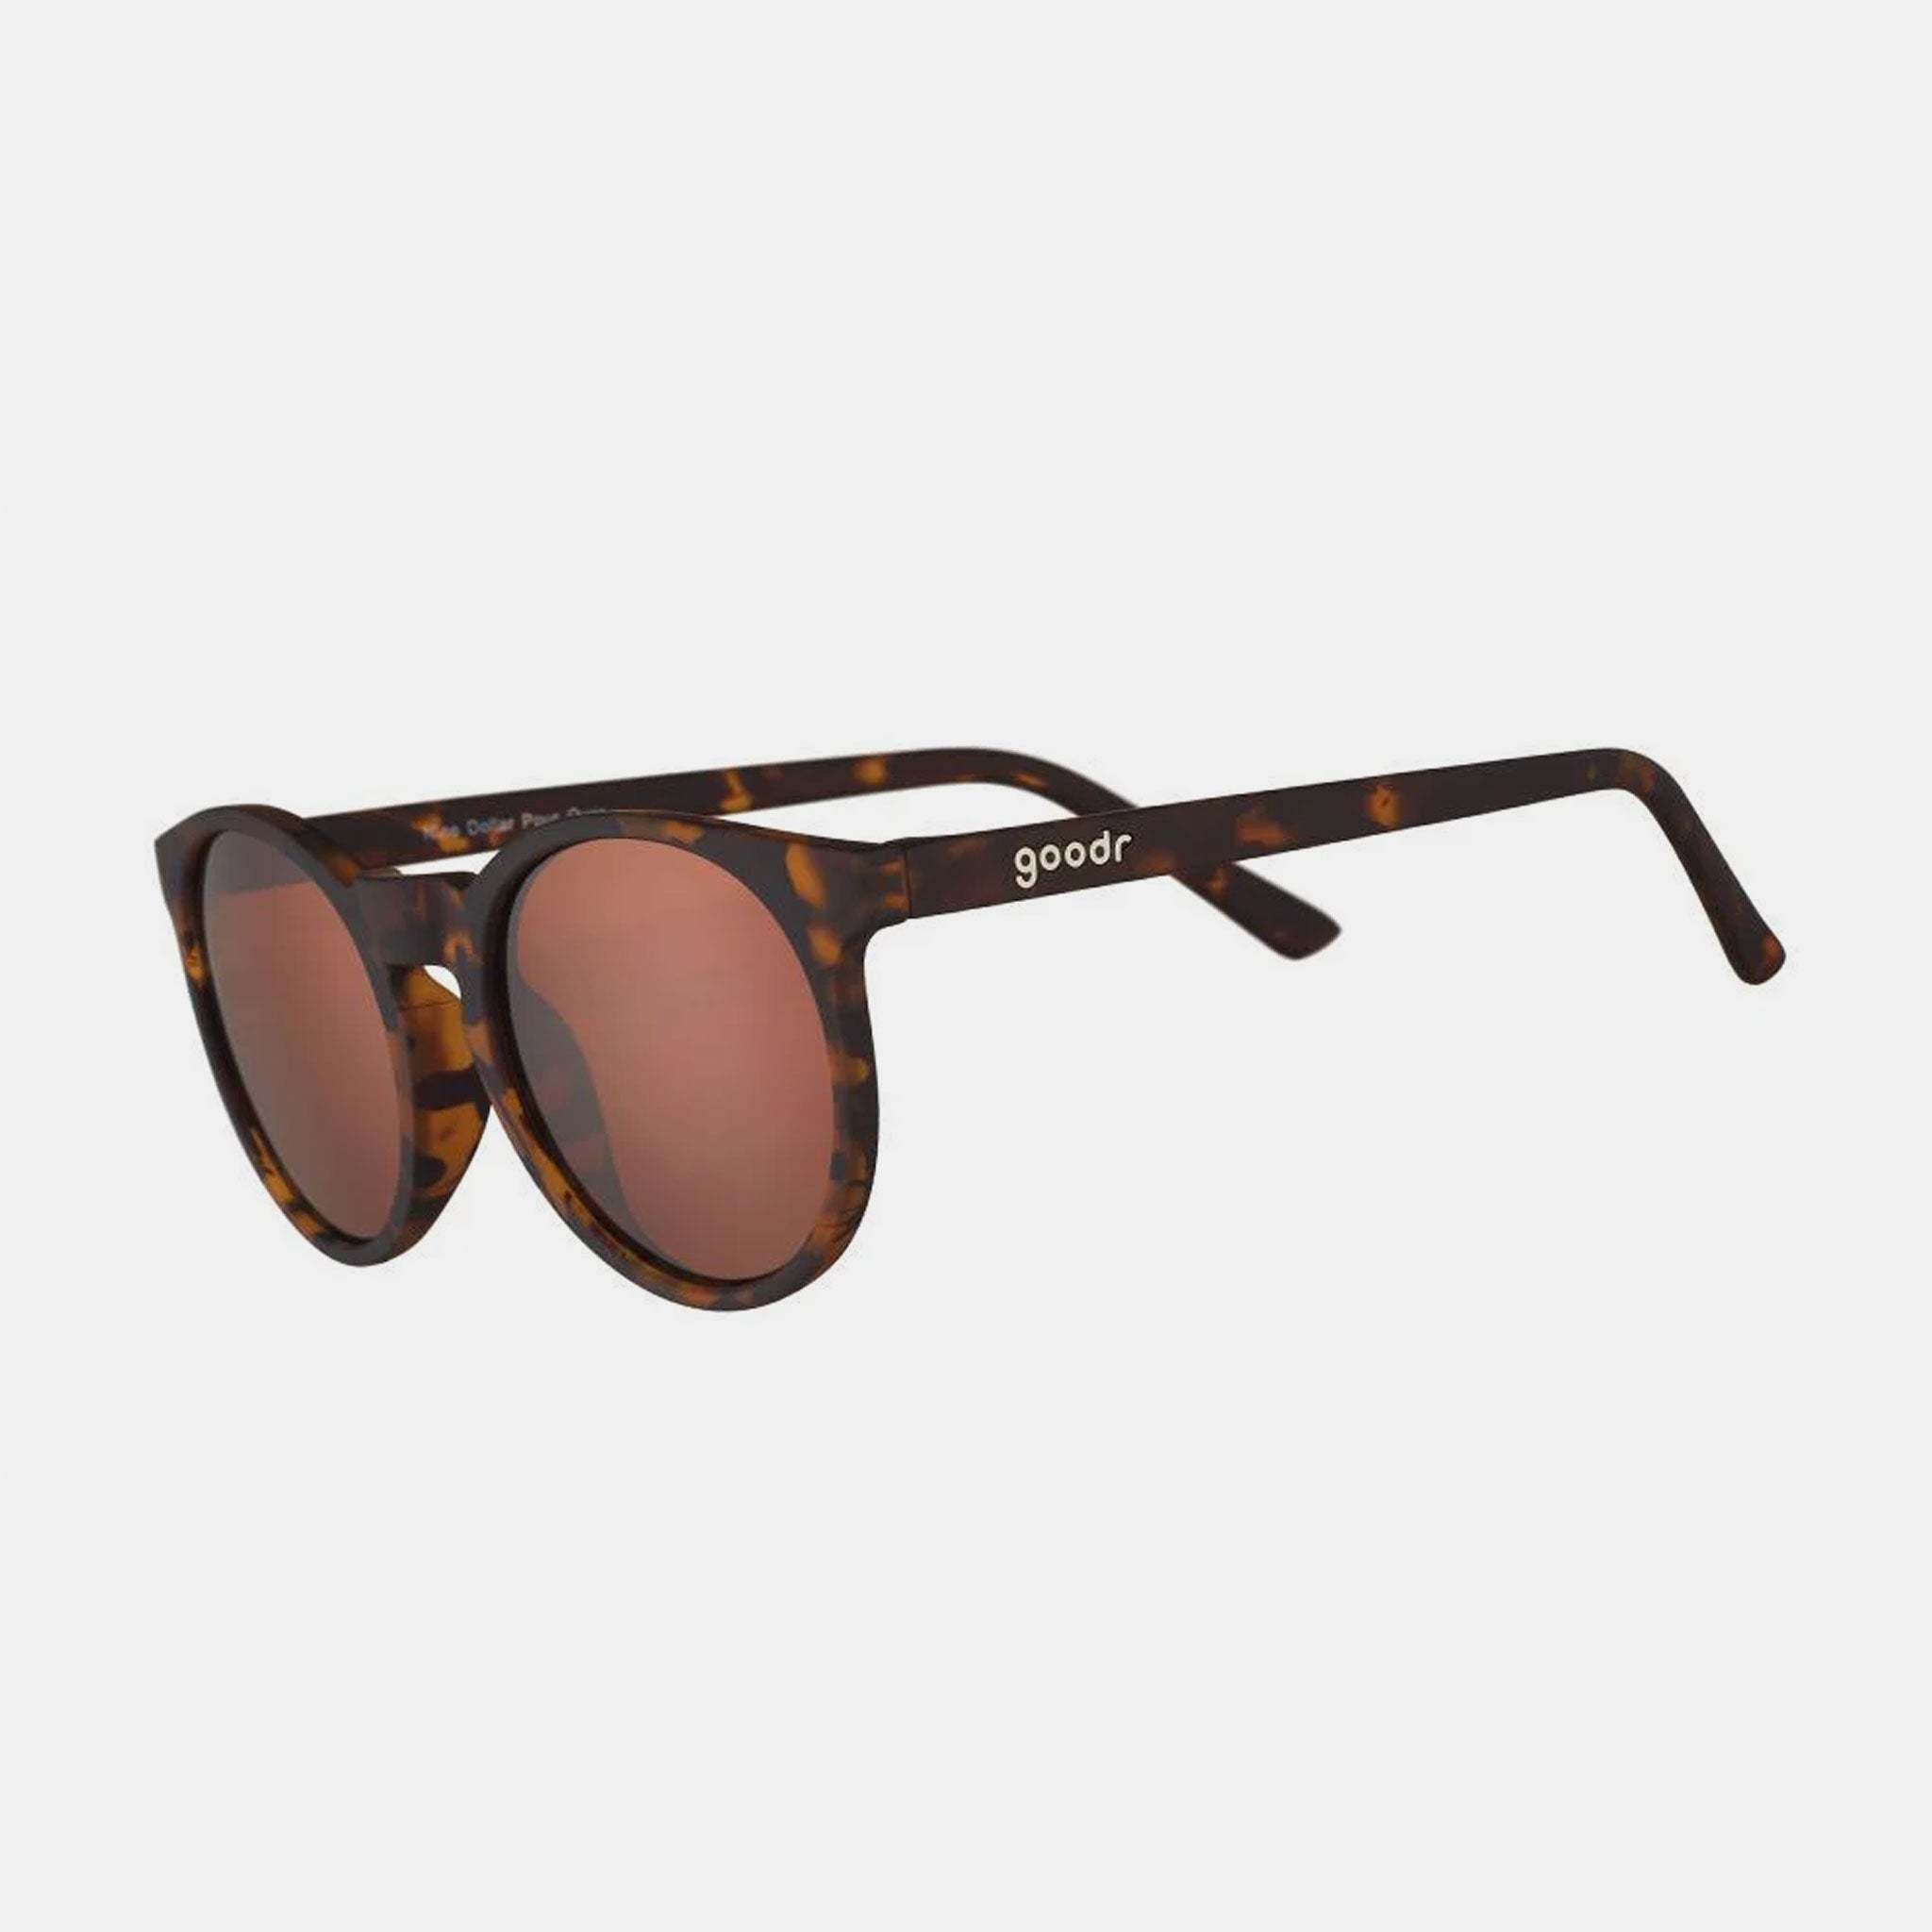 goodr-sunglasses-tortoiseshell-nine-dollar_01.jpg